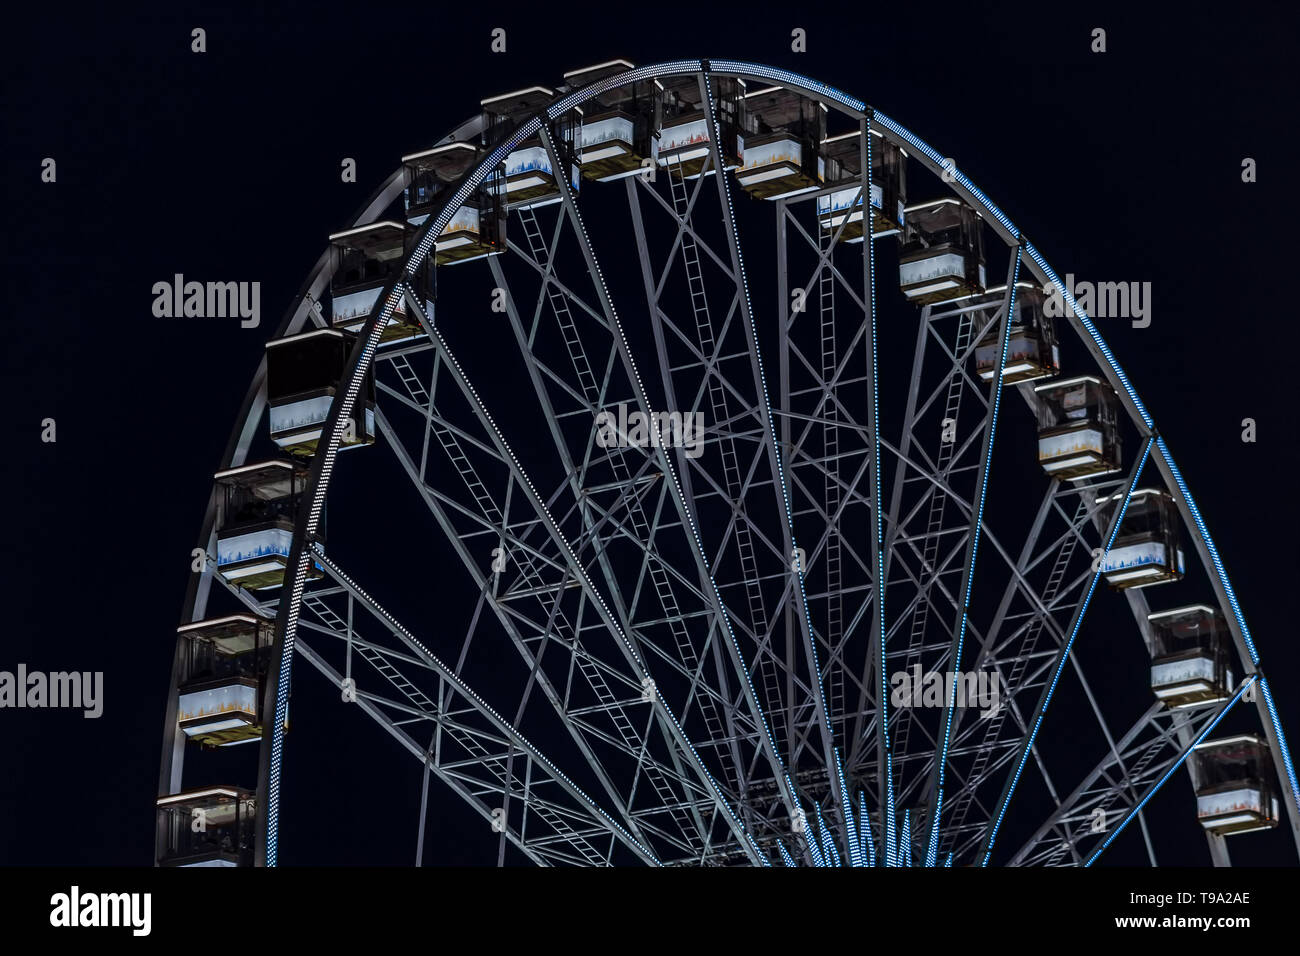 Vergnügungspark in der Nacht - Riesenrad in Bewegung Stockfoto